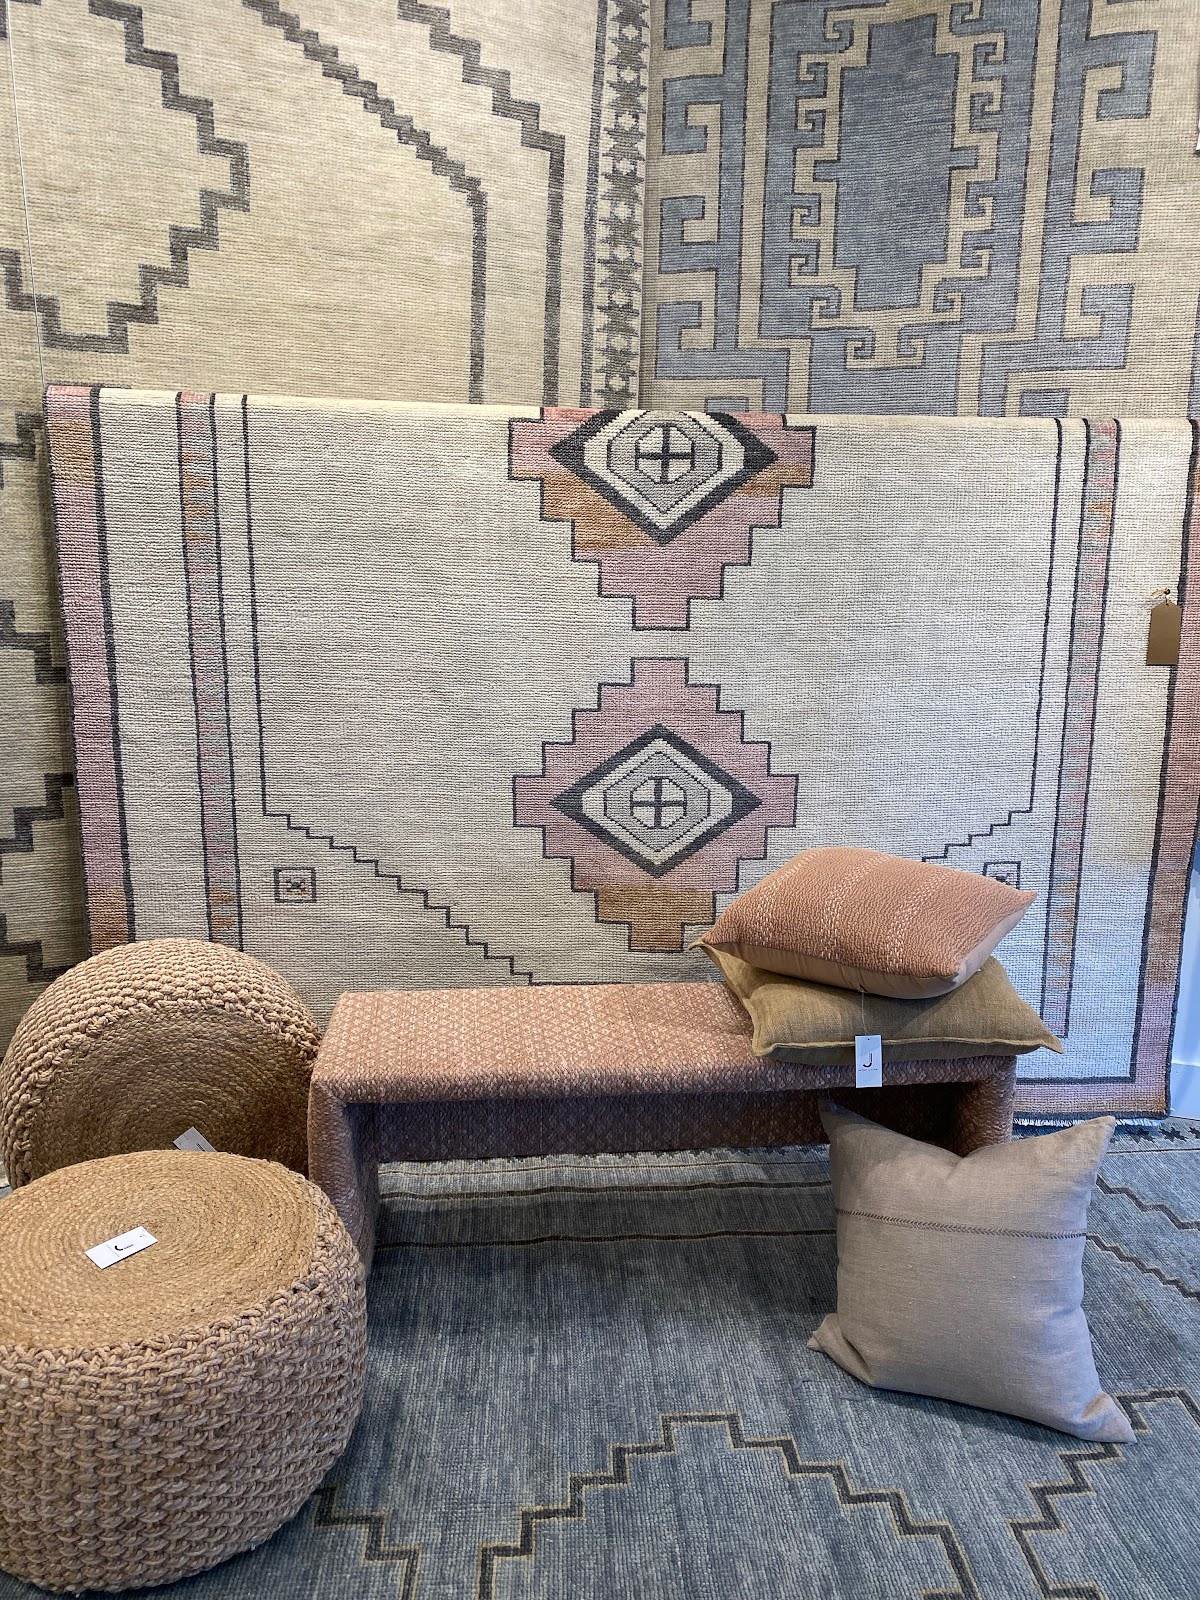 Tribal design geometries update rugs